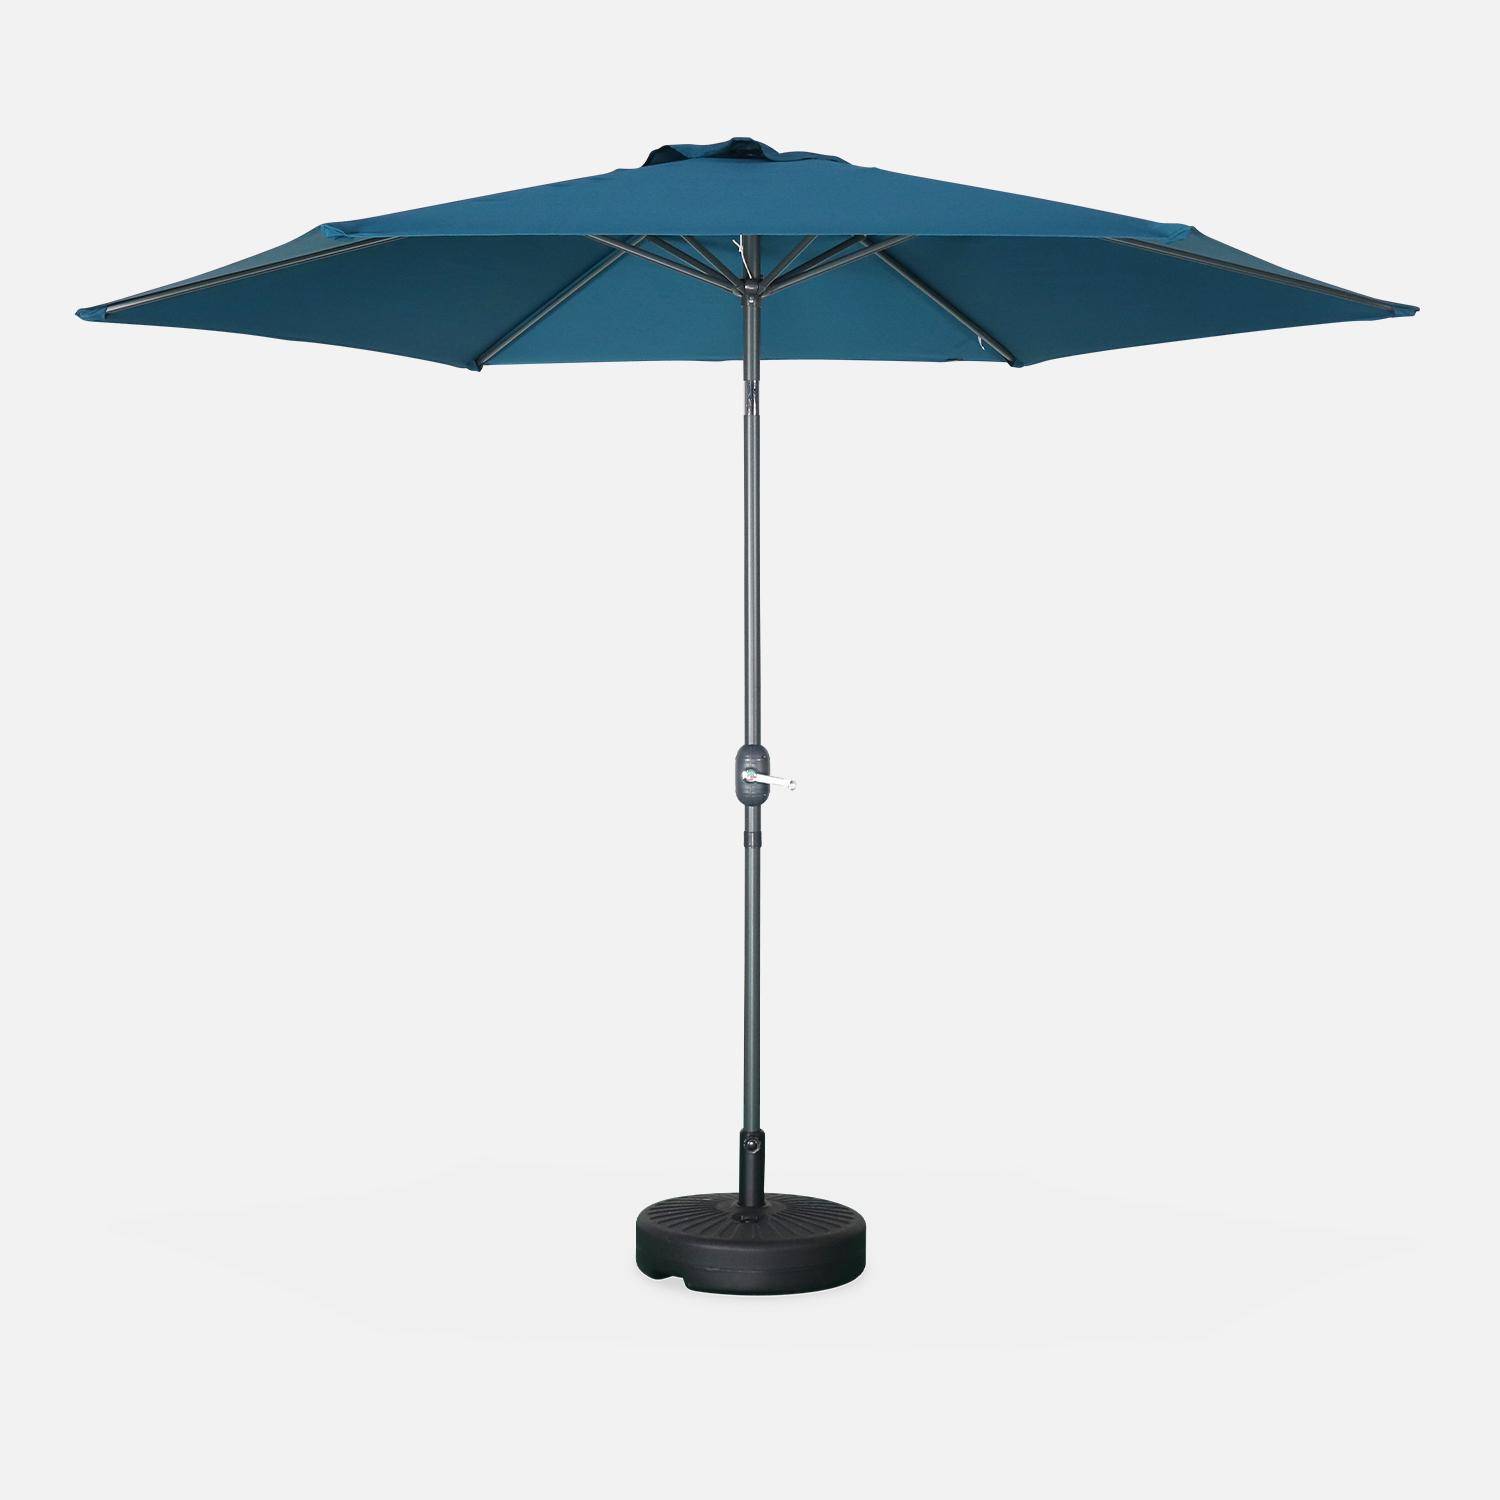 Guarda-chuva redondo recto Ø300cm - Touquet Bleu canard - poste central de alumínio com pega de abertura Photo1